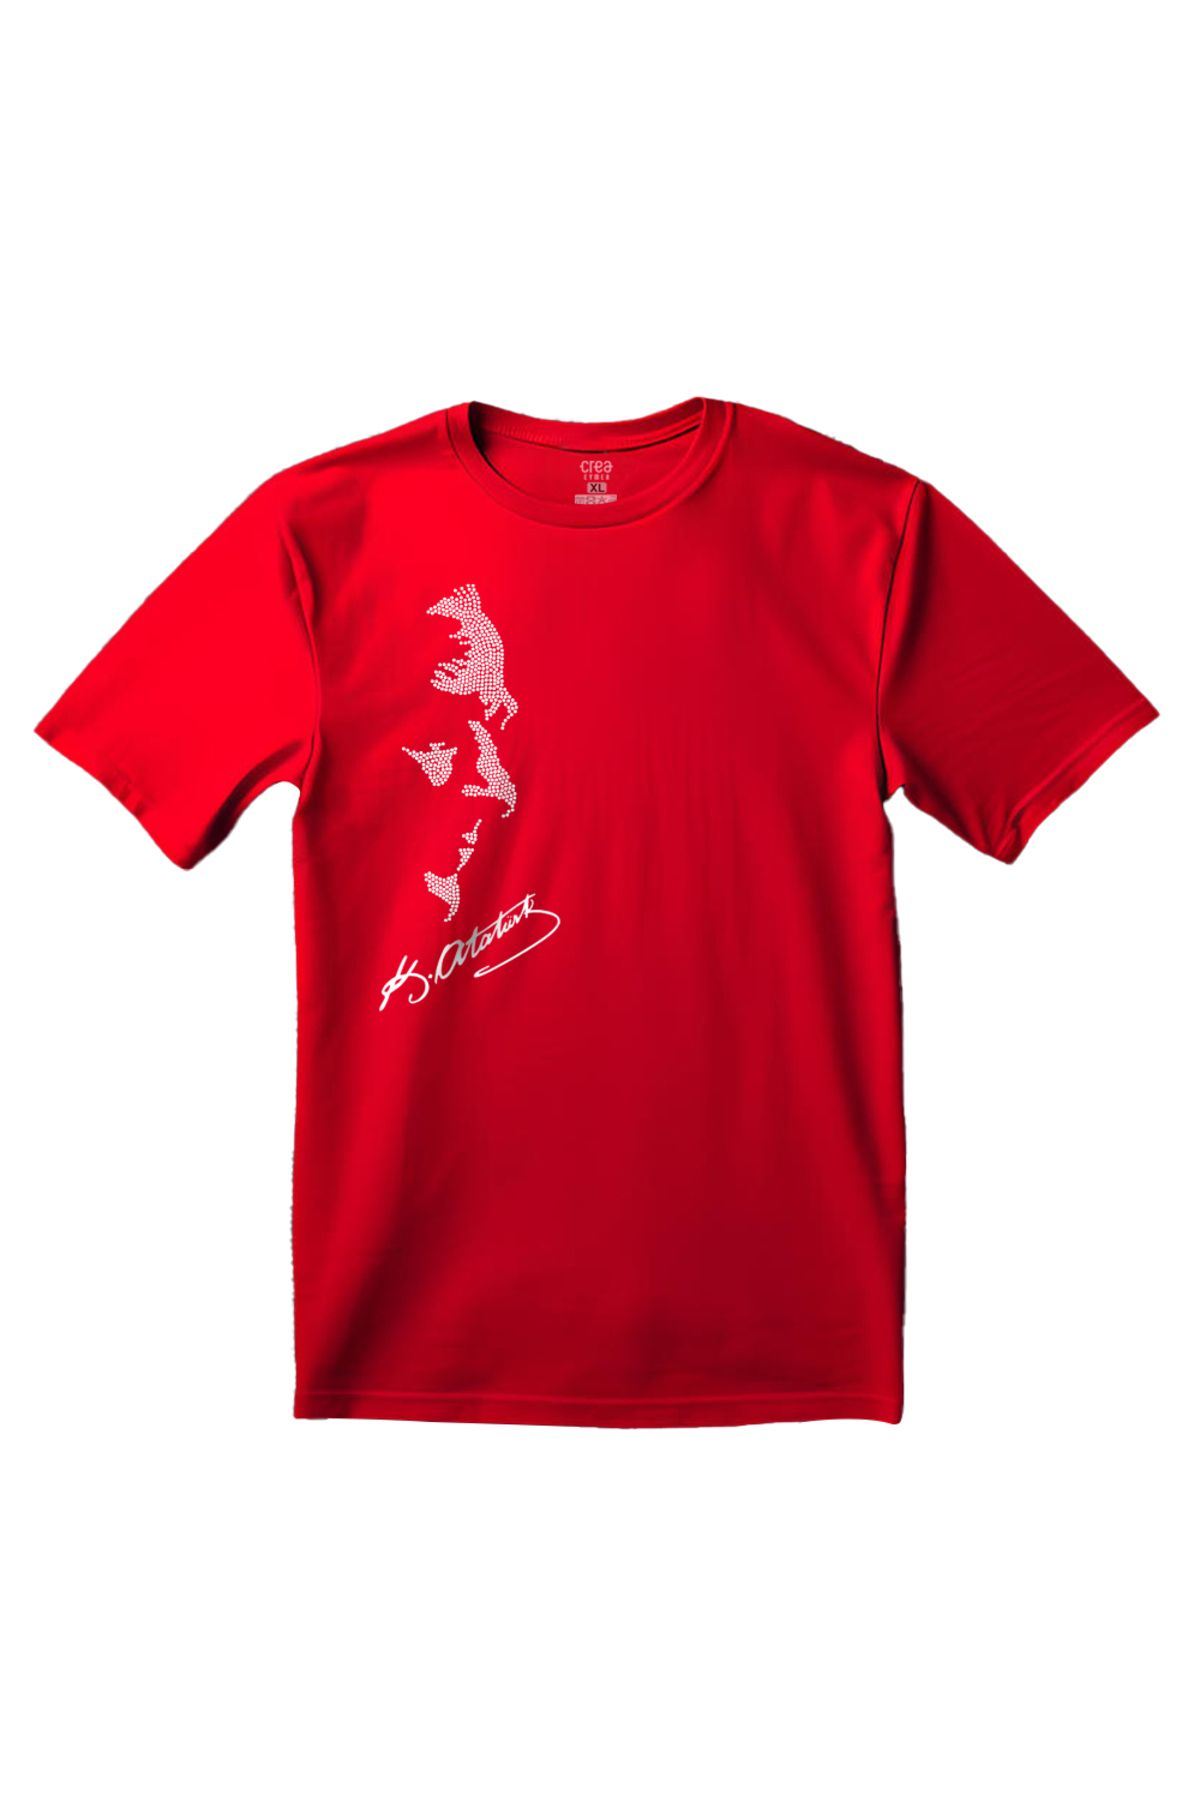 Crea Eymer Wear Atatürk Kristal Taş Baskılı Kırmızı Tişört